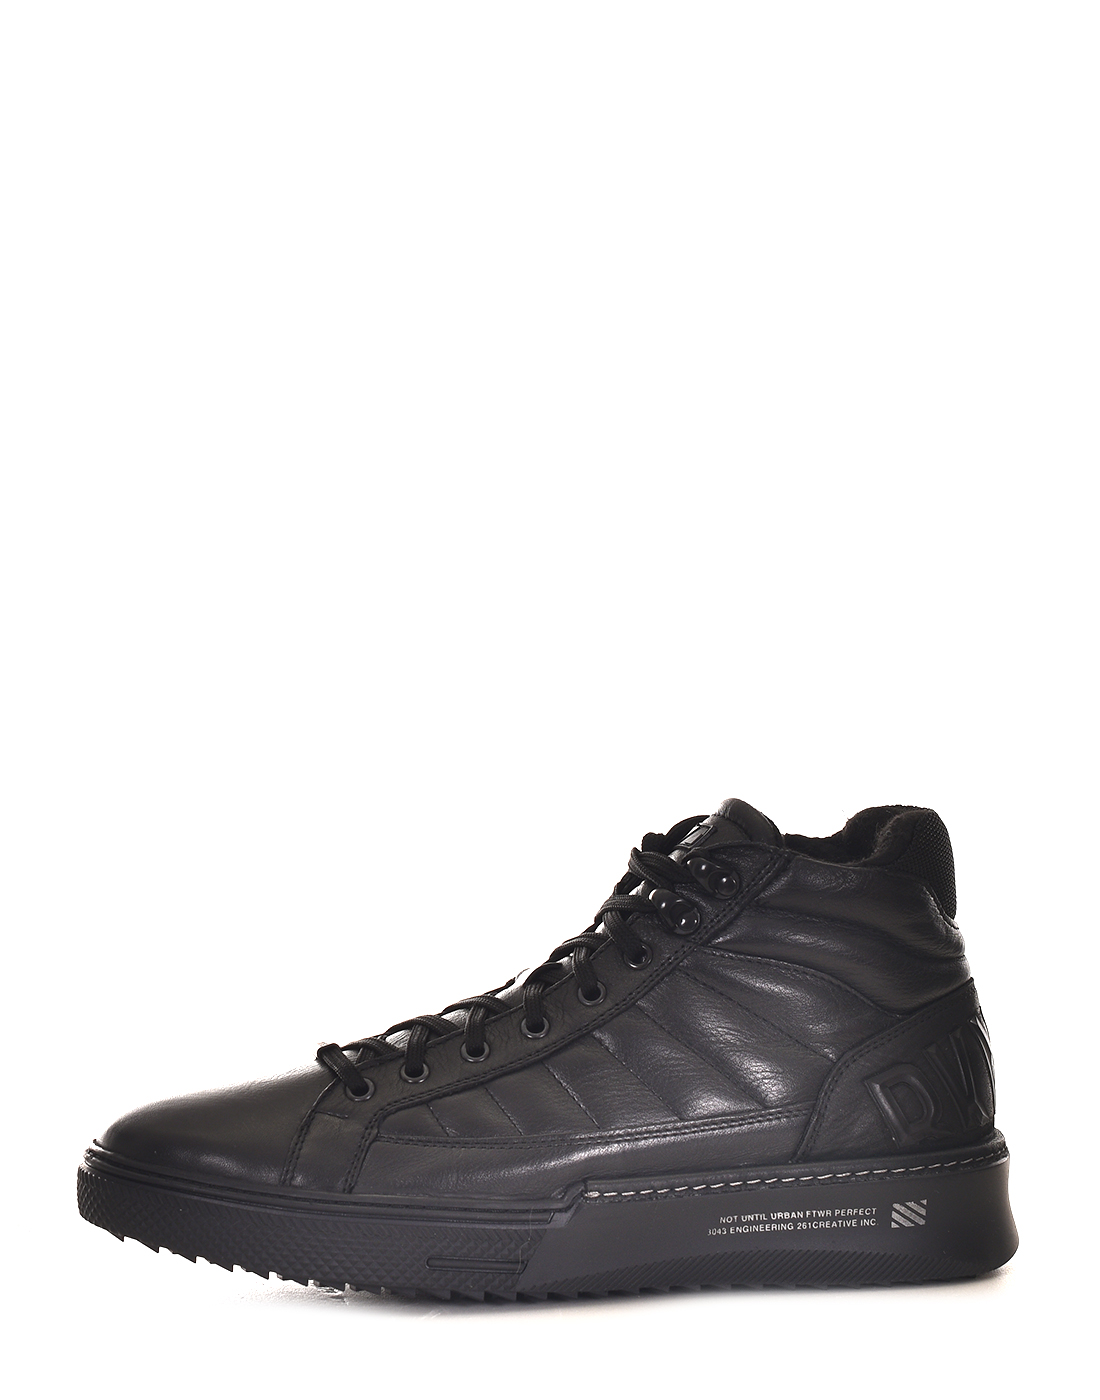 Ботинки мужские C.T.UNLTD М018#10чп черные 41 RU